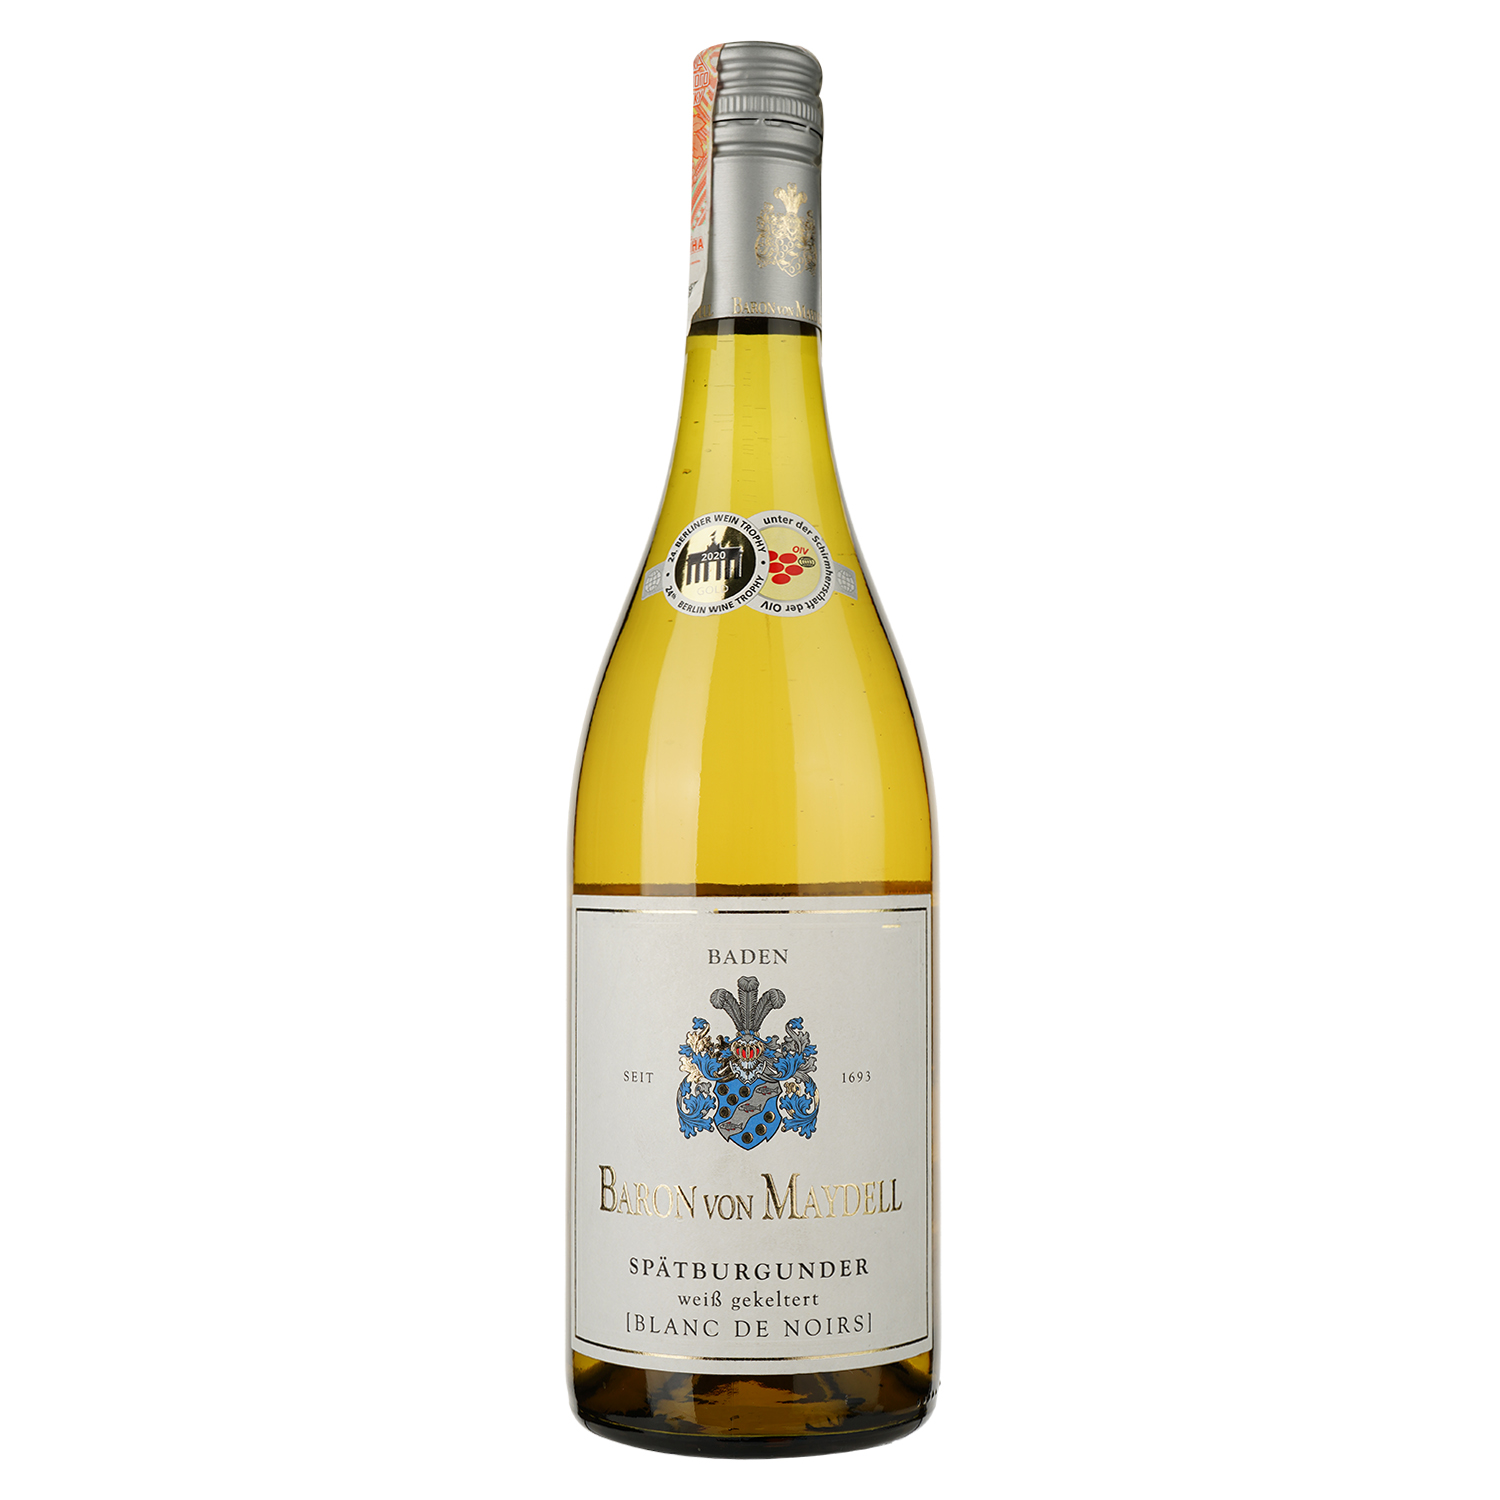 Вино Baron von Maydell Spatburgunder Blanc de Noir, белое, сухое, 13%, 0,75 л (37258) - фото 1